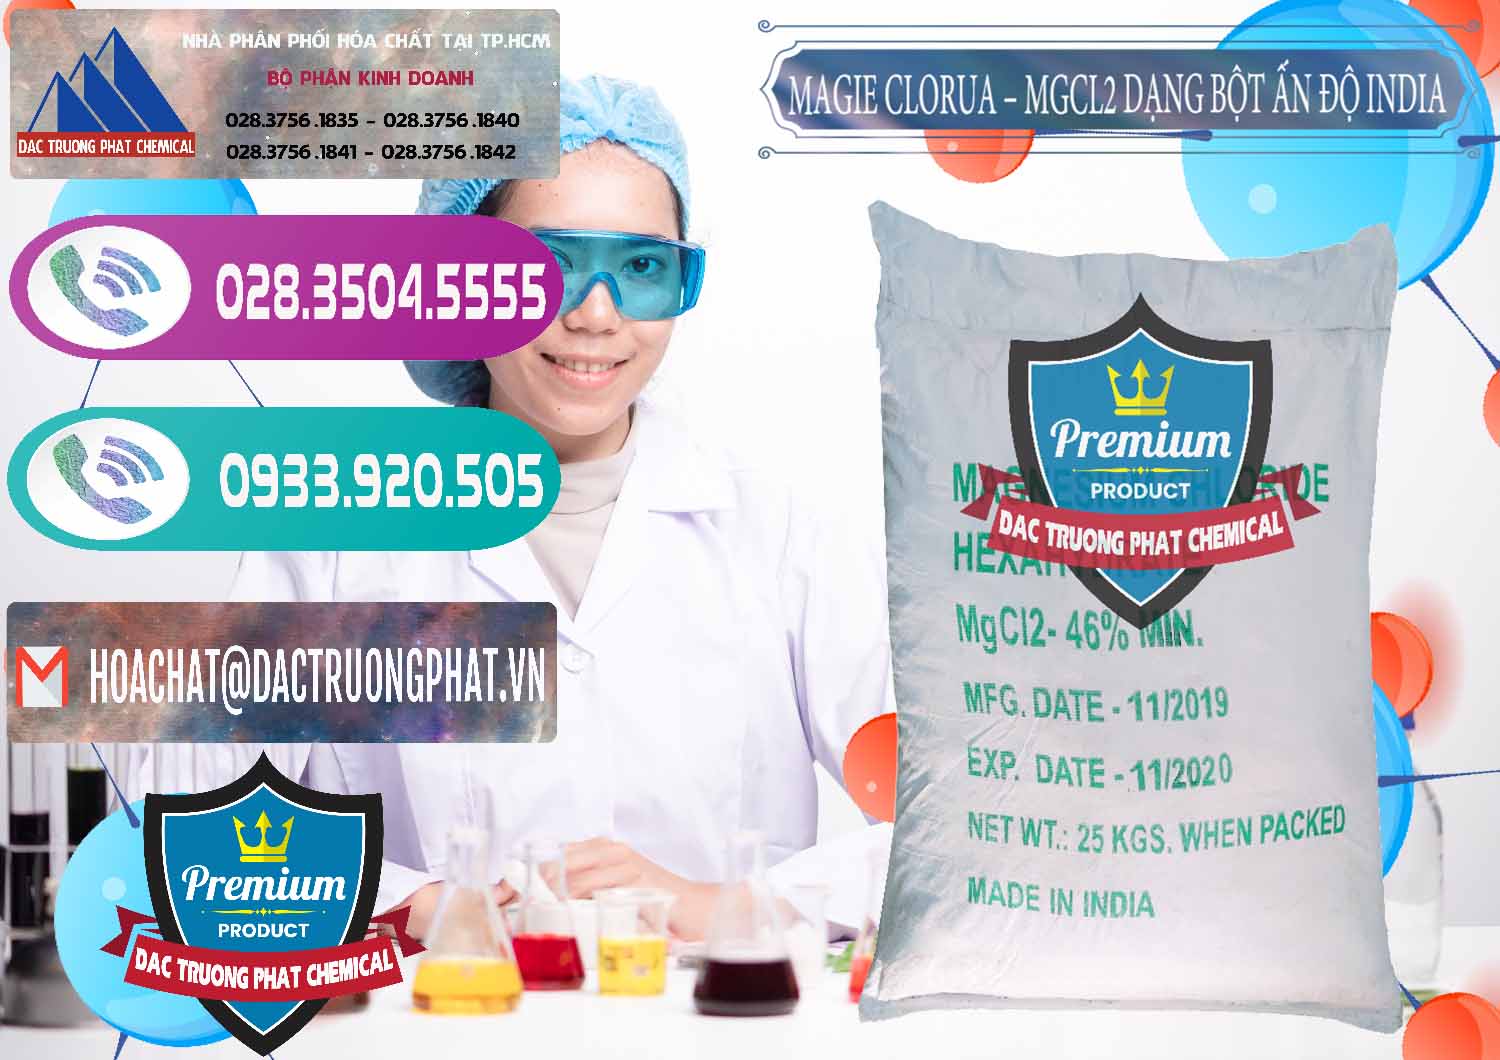 Cty kinh doanh & bán Magie Clorua – MGCL2 96% Dạng Bột Ấn Độ India - 0206 - Công ty cung cấp và kinh doanh hóa chất tại TP.HCM - hoachatxulynuoc.com